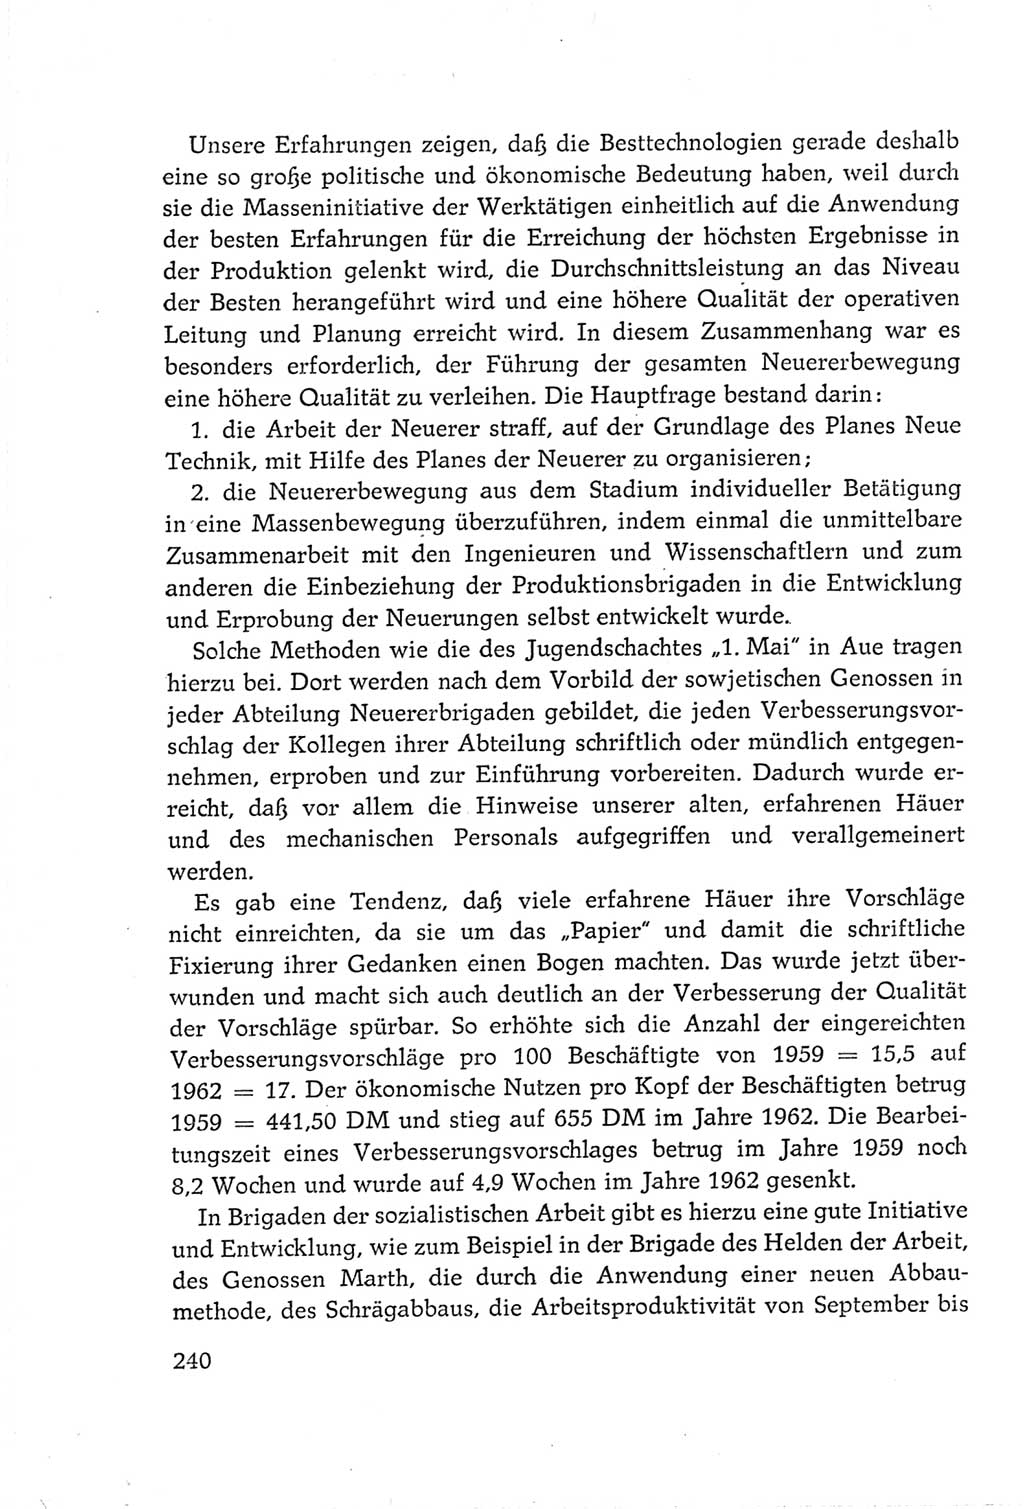 Protokoll der Verhandlungen des Ⅵ. Parteitages der Sozialistischen Einheitspartei Deutschlands (SED) [Deutsche Demokratische Republik (DDR)] 1963, Band Ⅲ, Seite 240 (Prot. Verh. Ⅵ. PT SED DDR 1963, Bd. Ⅲ, S. 240)